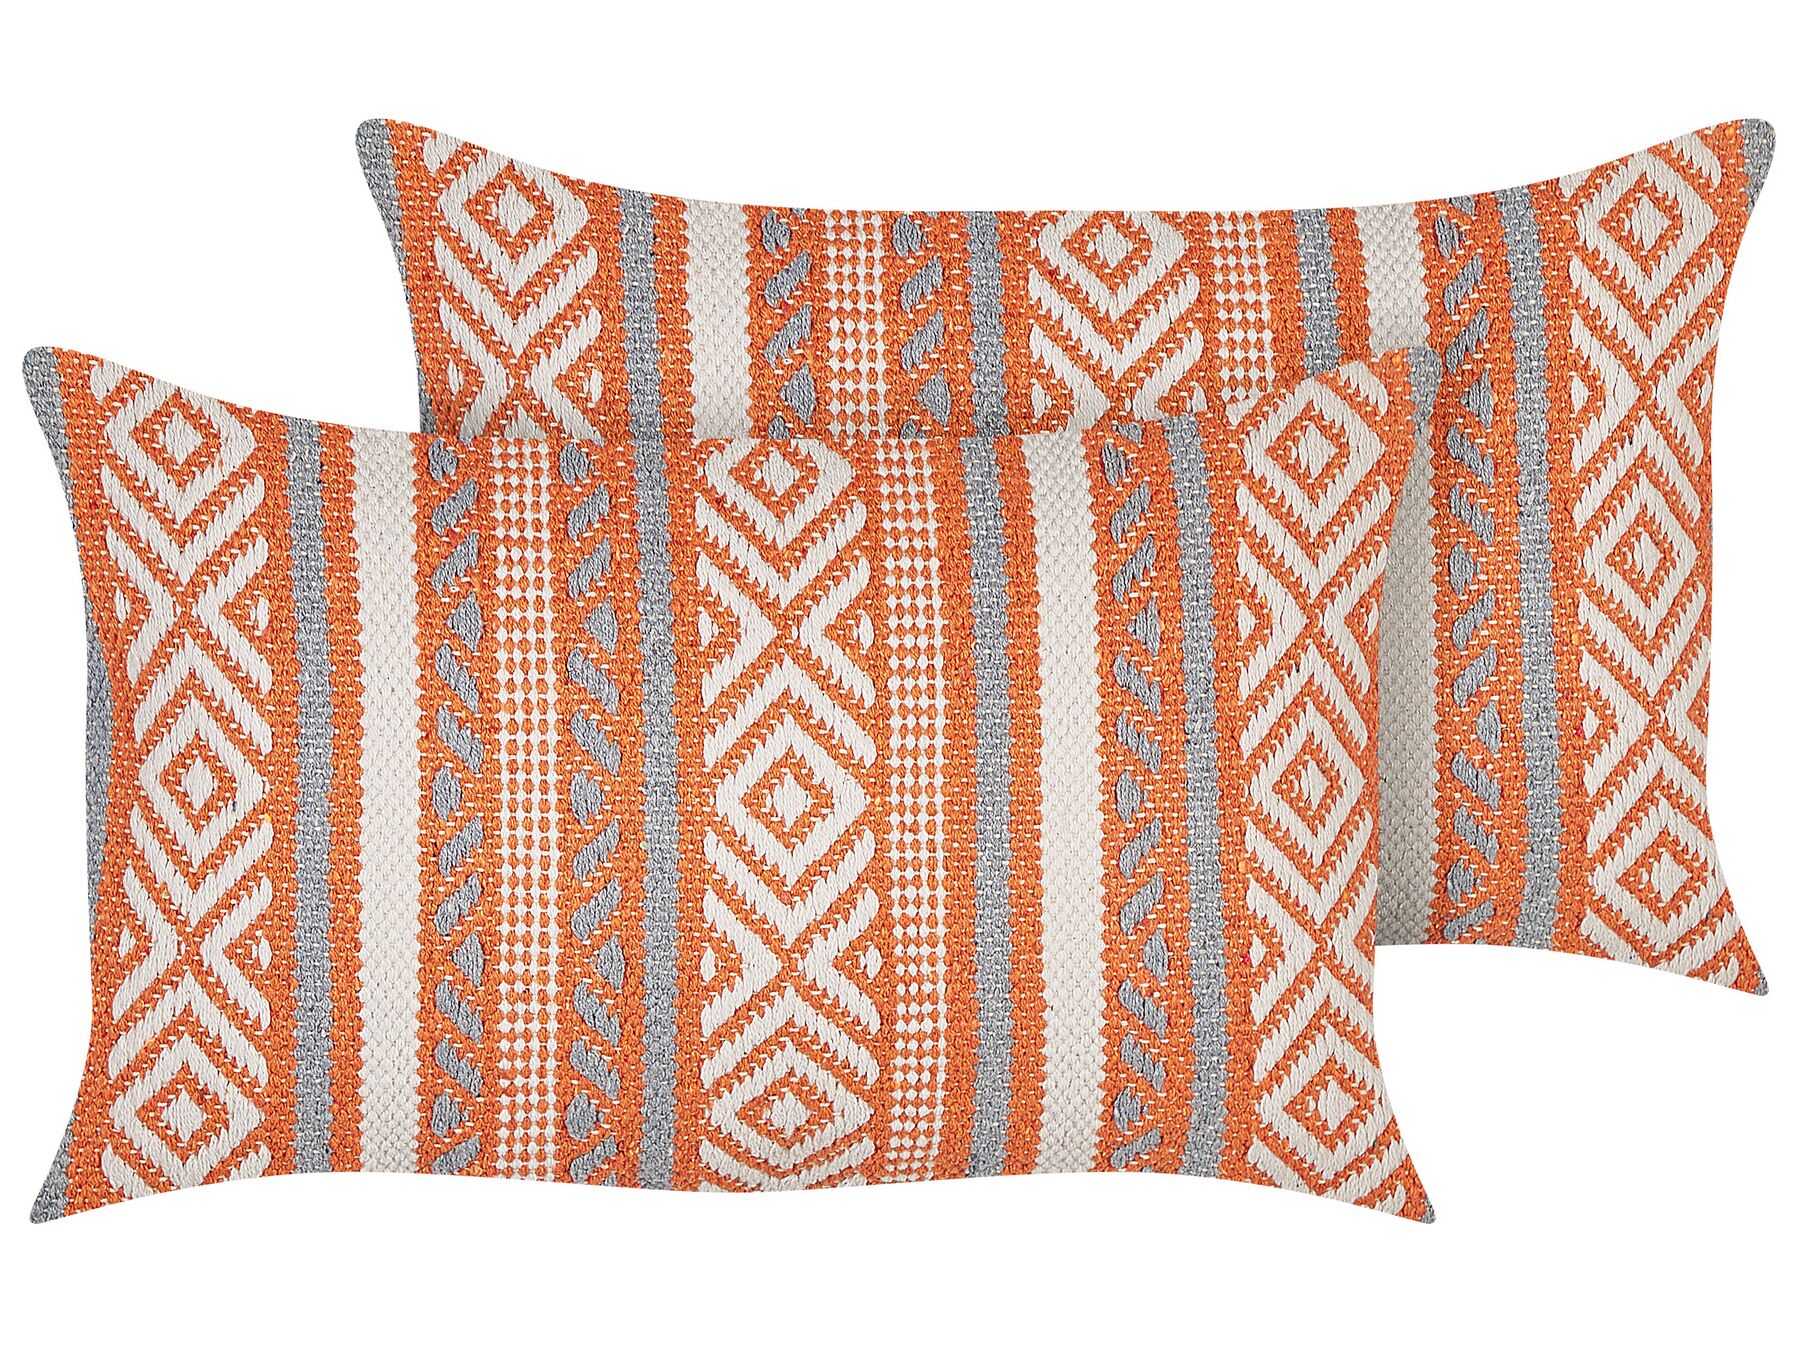 Conjunto de 2 almofadas decorativas em algodão laranja e branco com padrão geométrico 30 x 50 cm INULA_843132